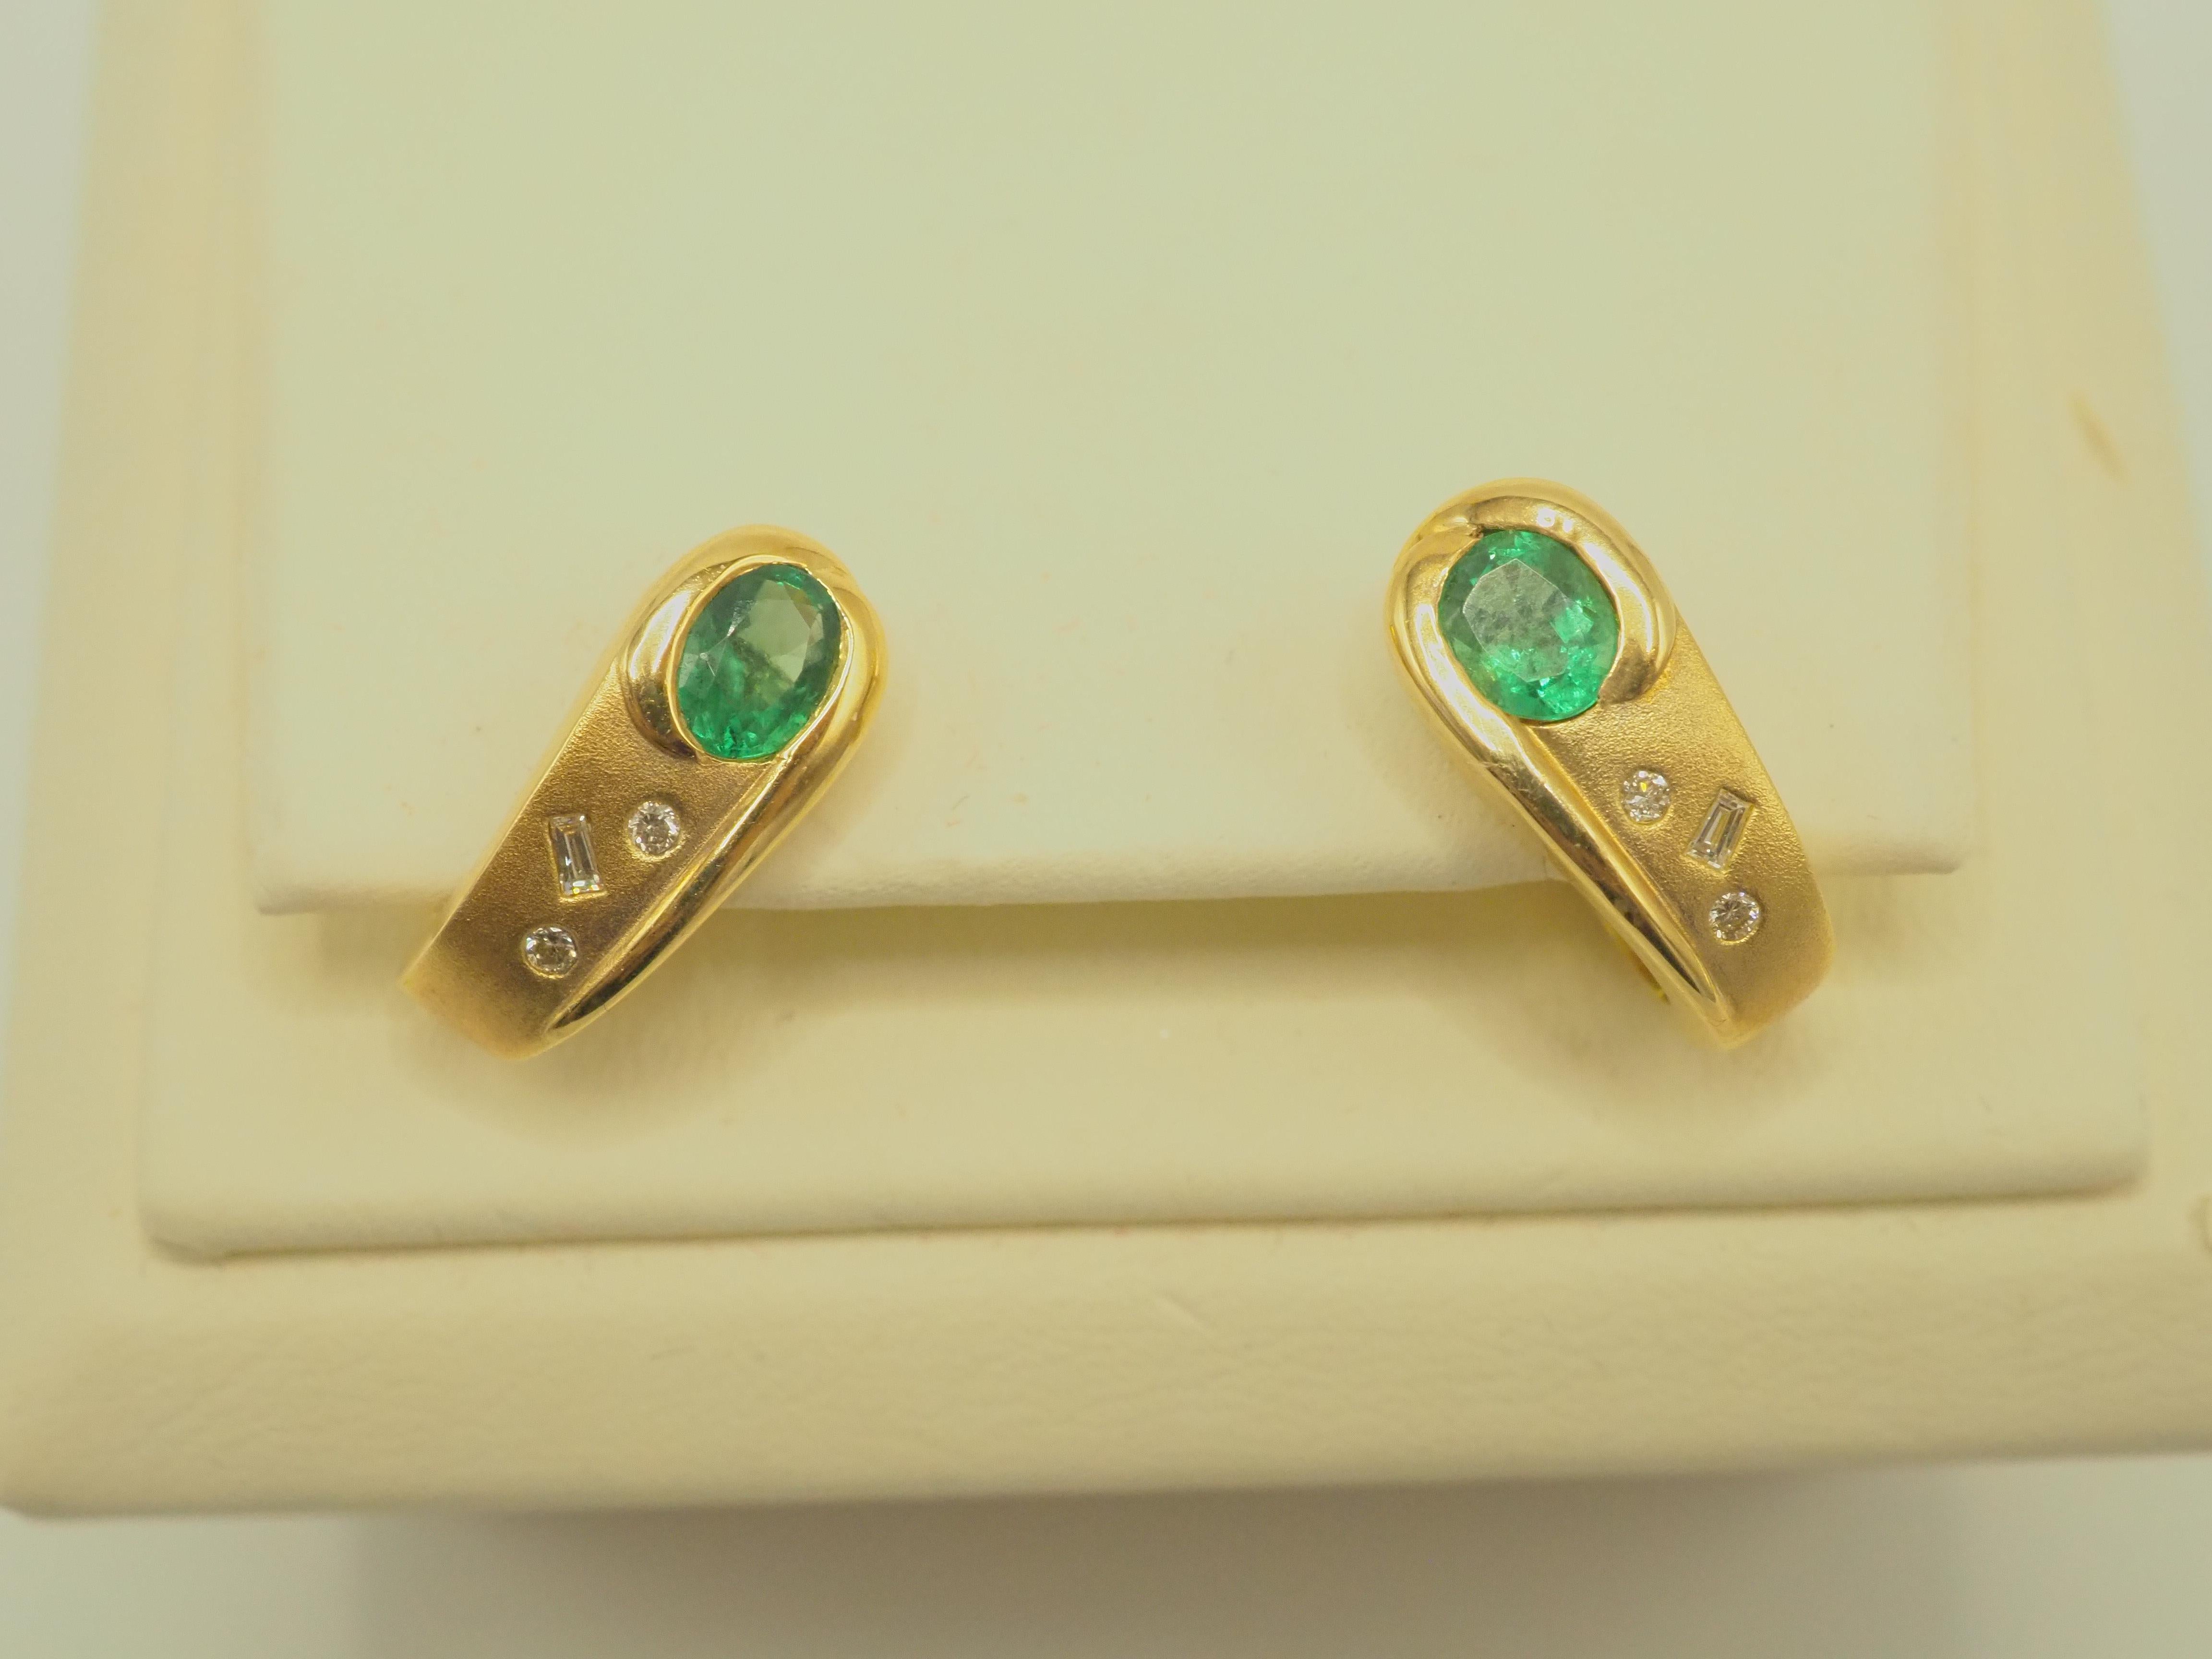 Dieses Stück ist ein feiner und wunderschöner ovaler, leuchtend grüner Smaragd und ein einzigartiger Diamant-Ohrring. Die ovalen Smaragde haben einen sehr schönen hellen grünen Ton und Sättigung mit guter Klarheit. Die Baguette und runden Diamanten